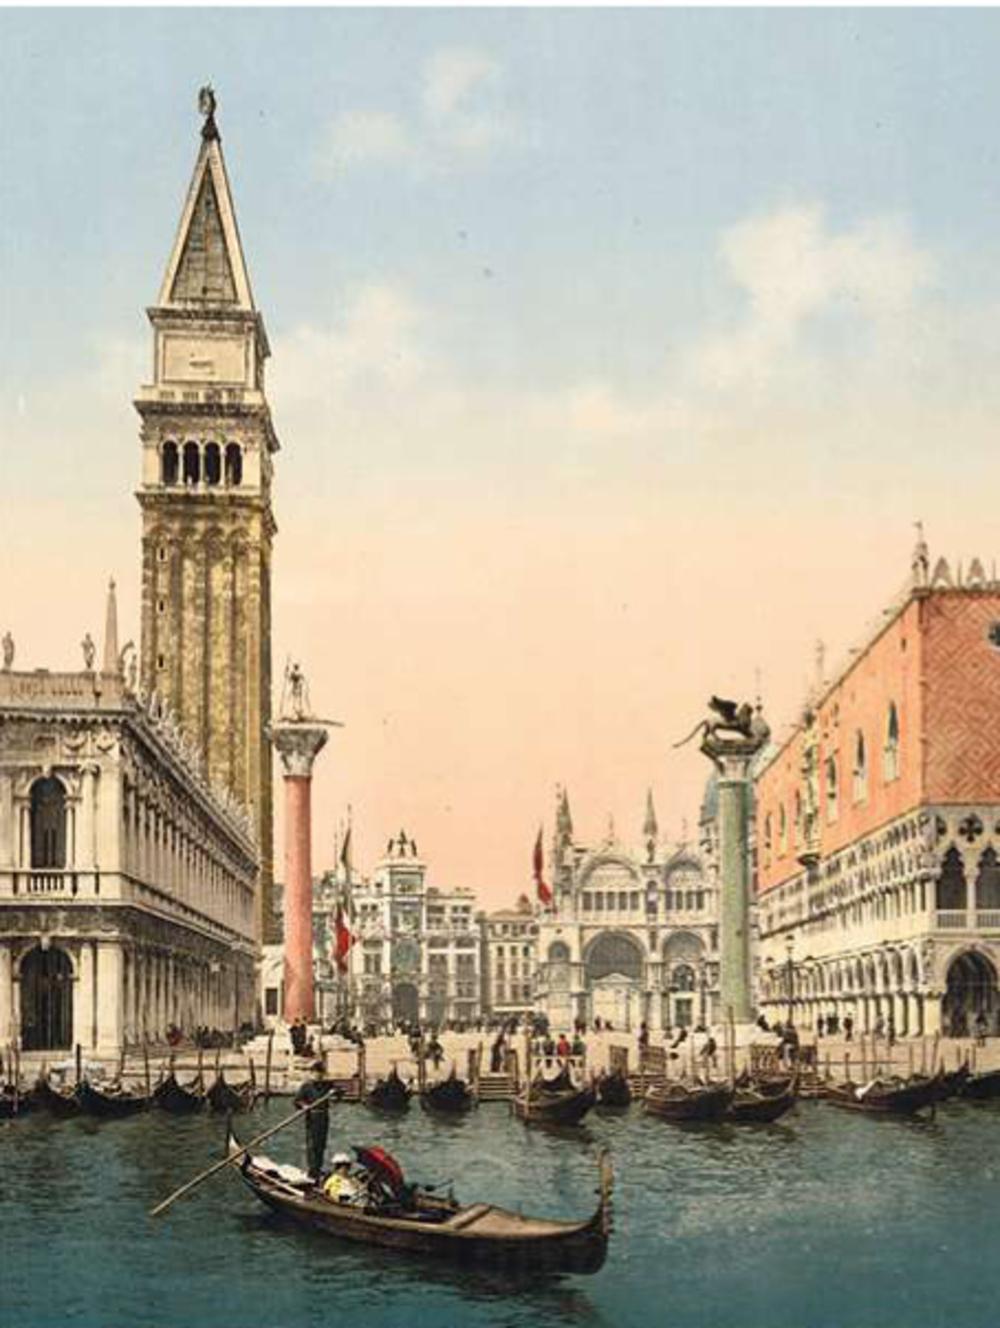 Het carnaval in Venetië beleefde in de 18de eeuw zijn grote bloeiperiode. Casanova groeide op met verkleedpartijen en maskerades. Schilderij van tijdgenoot Giovanni Domenico Tiepolo.